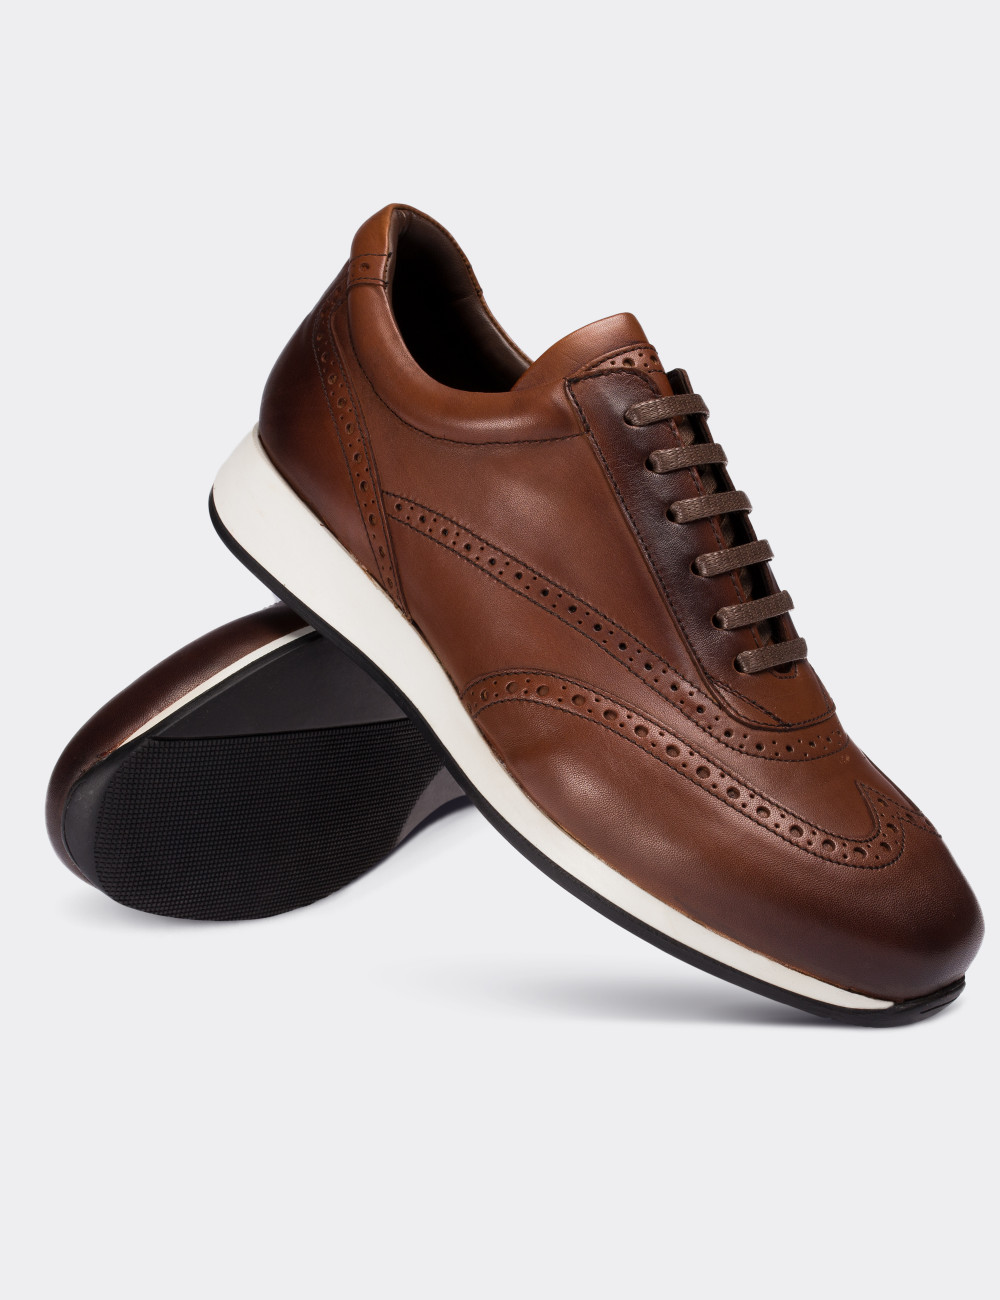 Tan  Leather Sneakers - 00750MTBAT01